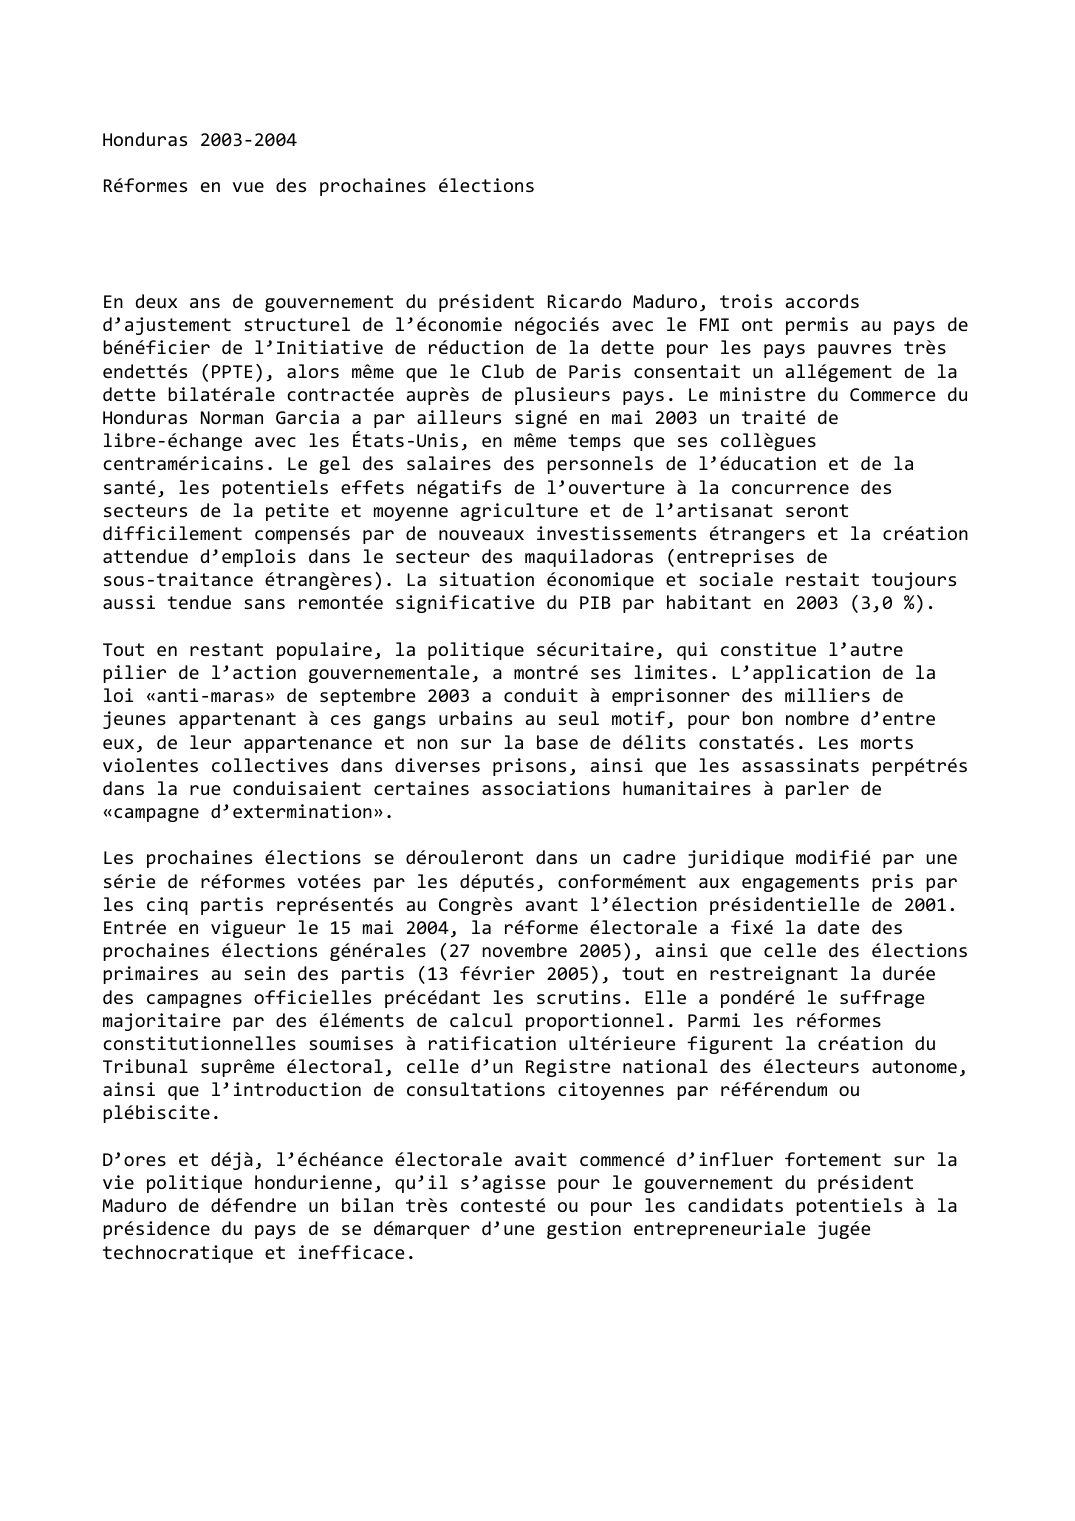 Prévisualisation du document Honduras (2003-2004)

Réformes en vue des prochaines élections